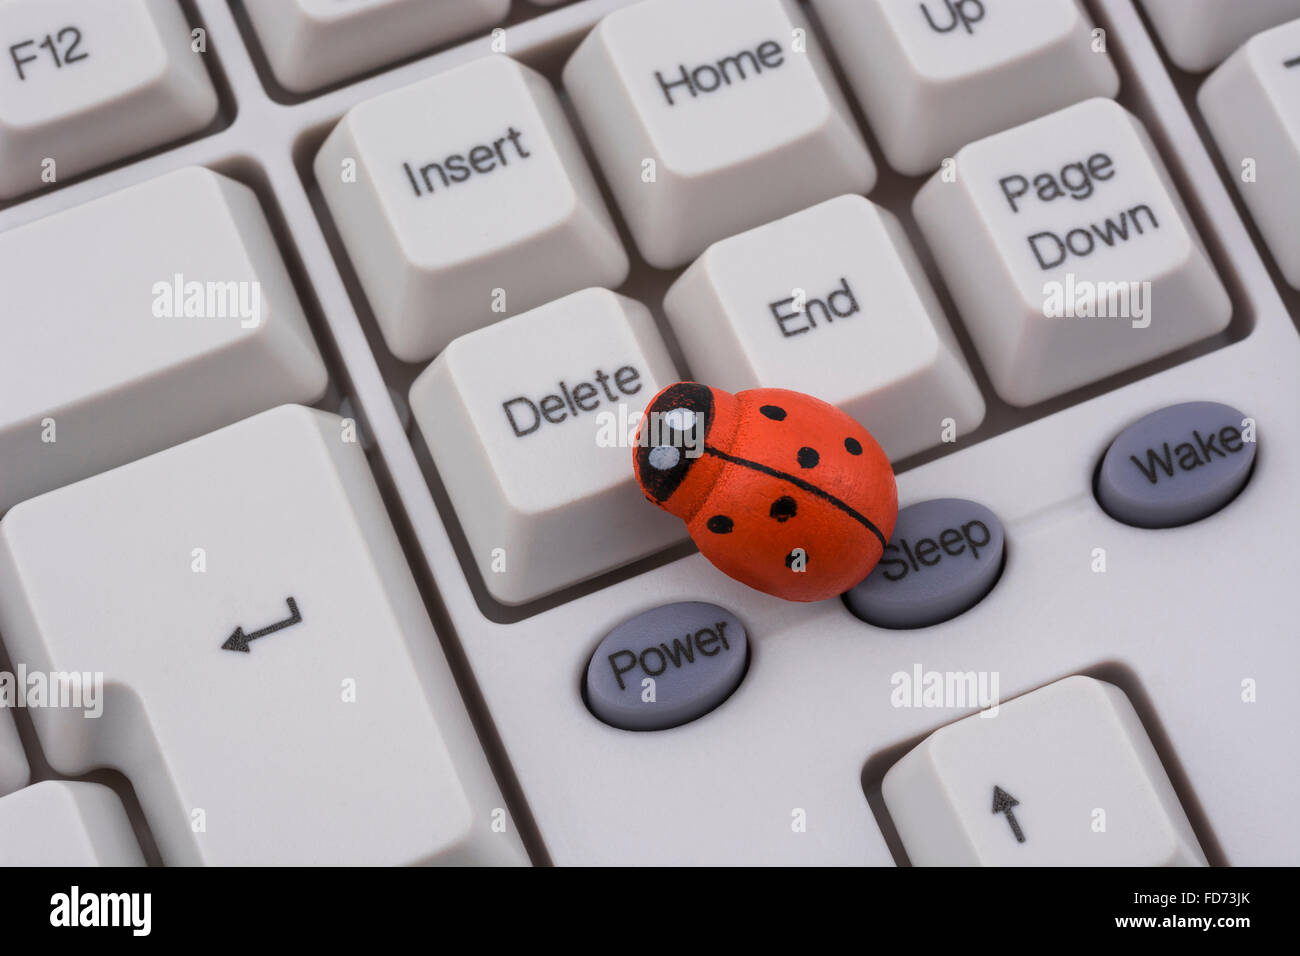 Marienkäfer / Ladybug auf PC-Tastatur - als visuelle Metapher für den Begriff "Computervirus" oder virale / System "Infektion". Stockfoto